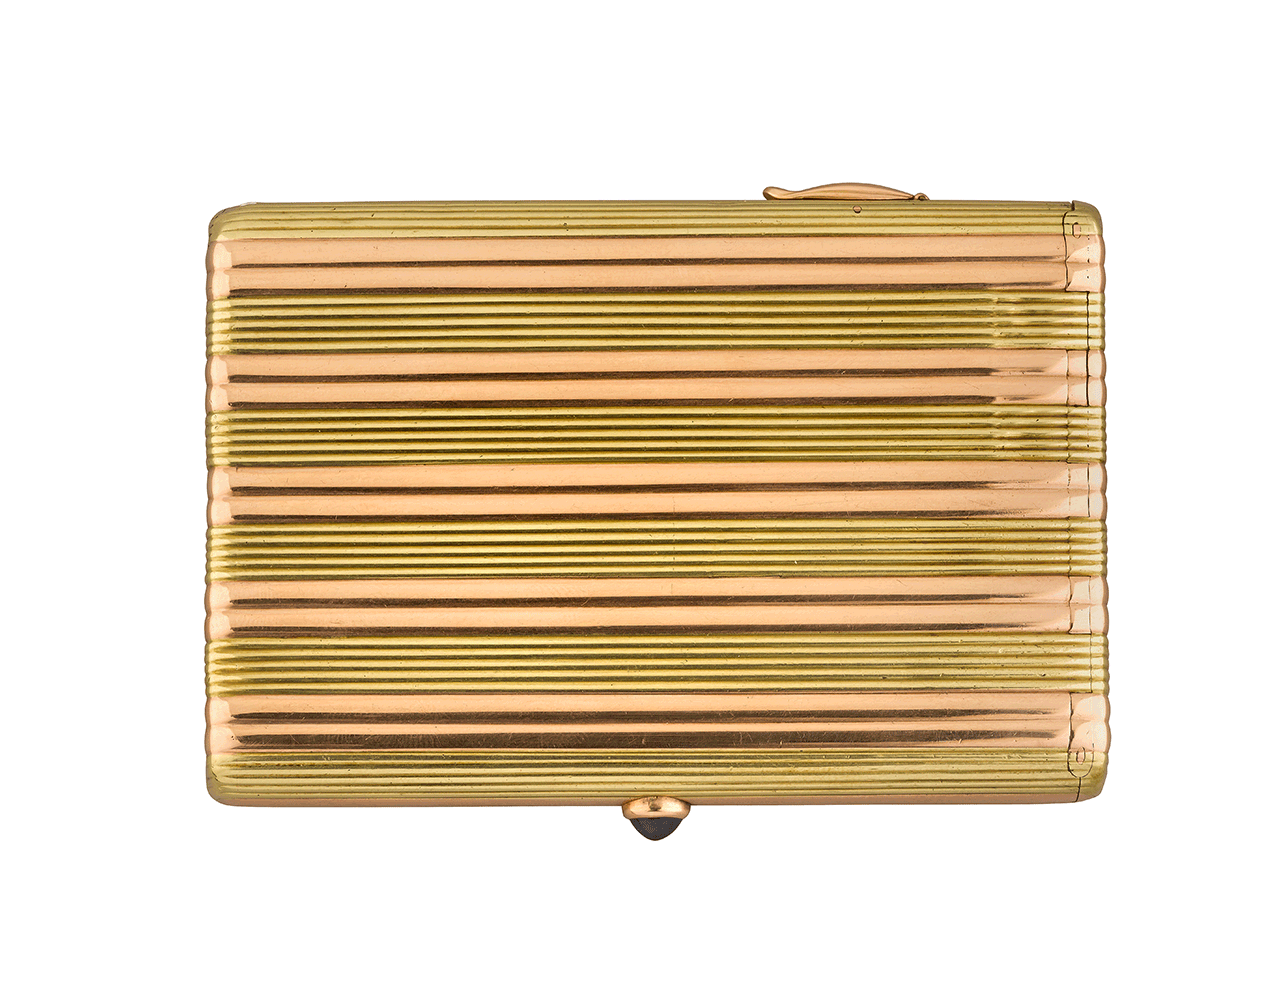 Russian Two-Colour Gold Cigarette Case - Ruzhnikov